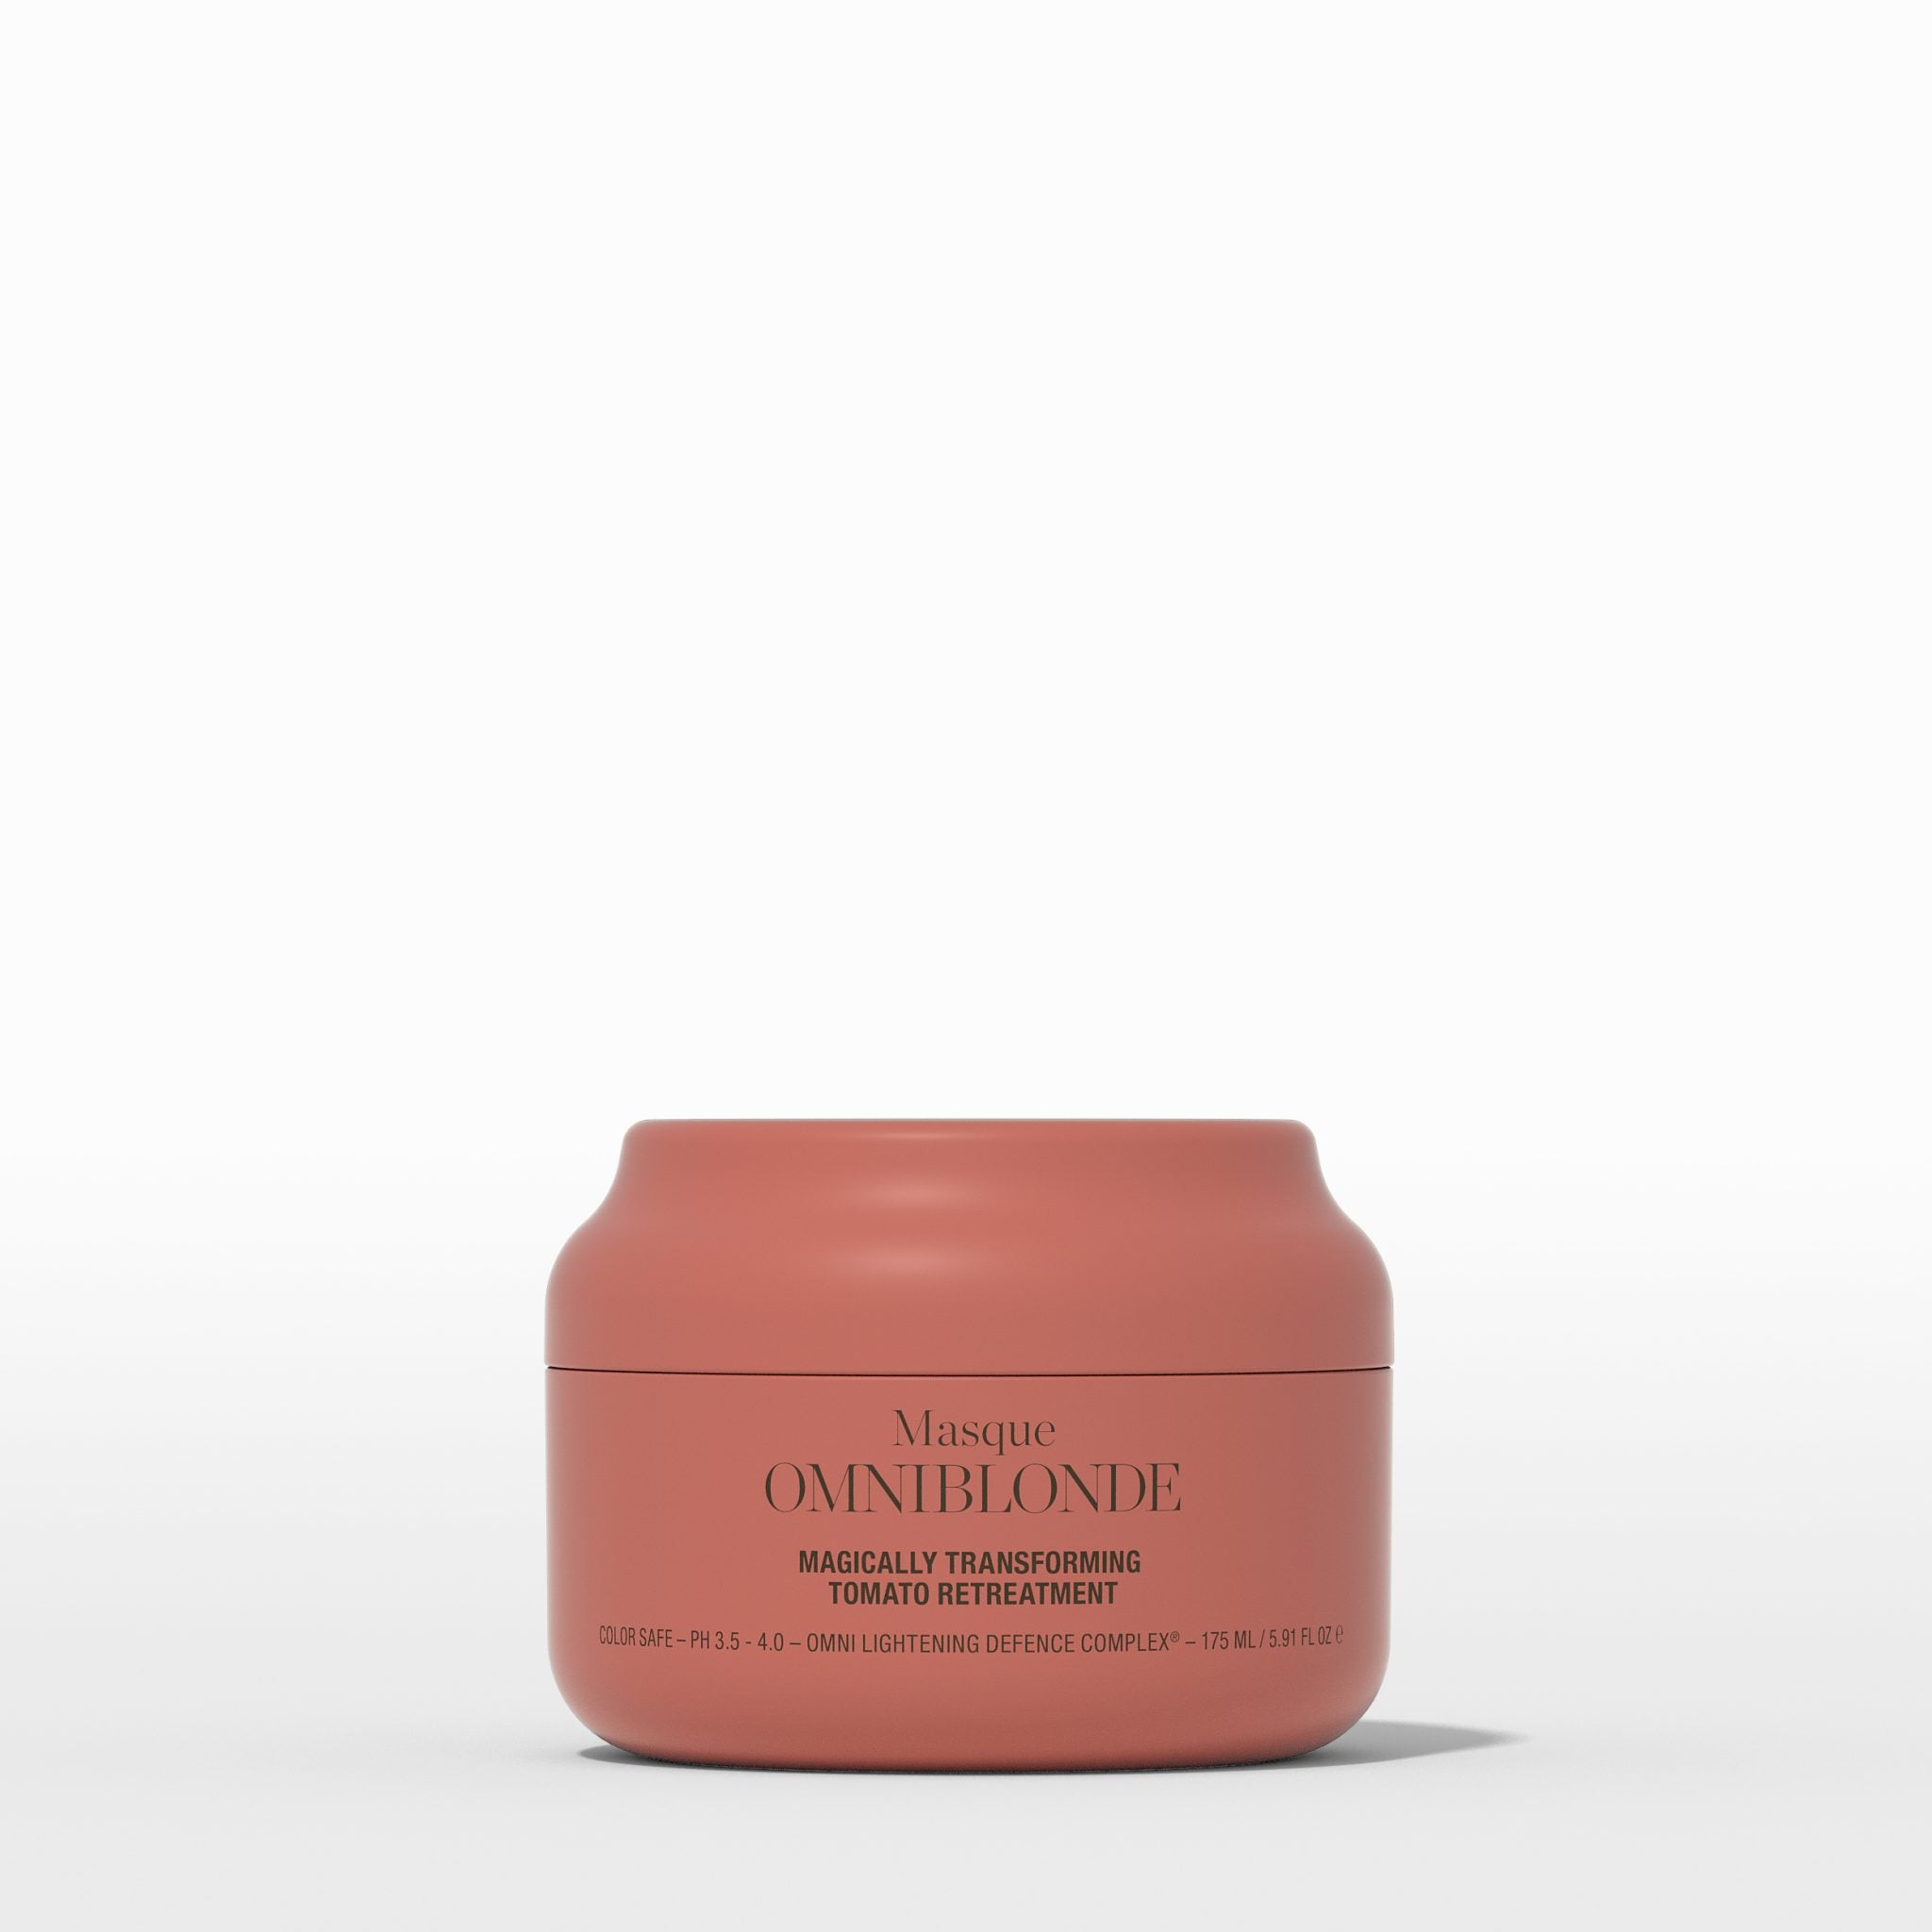 Masque magically transforming tomato retreatment Omniblonde - Crème Salon